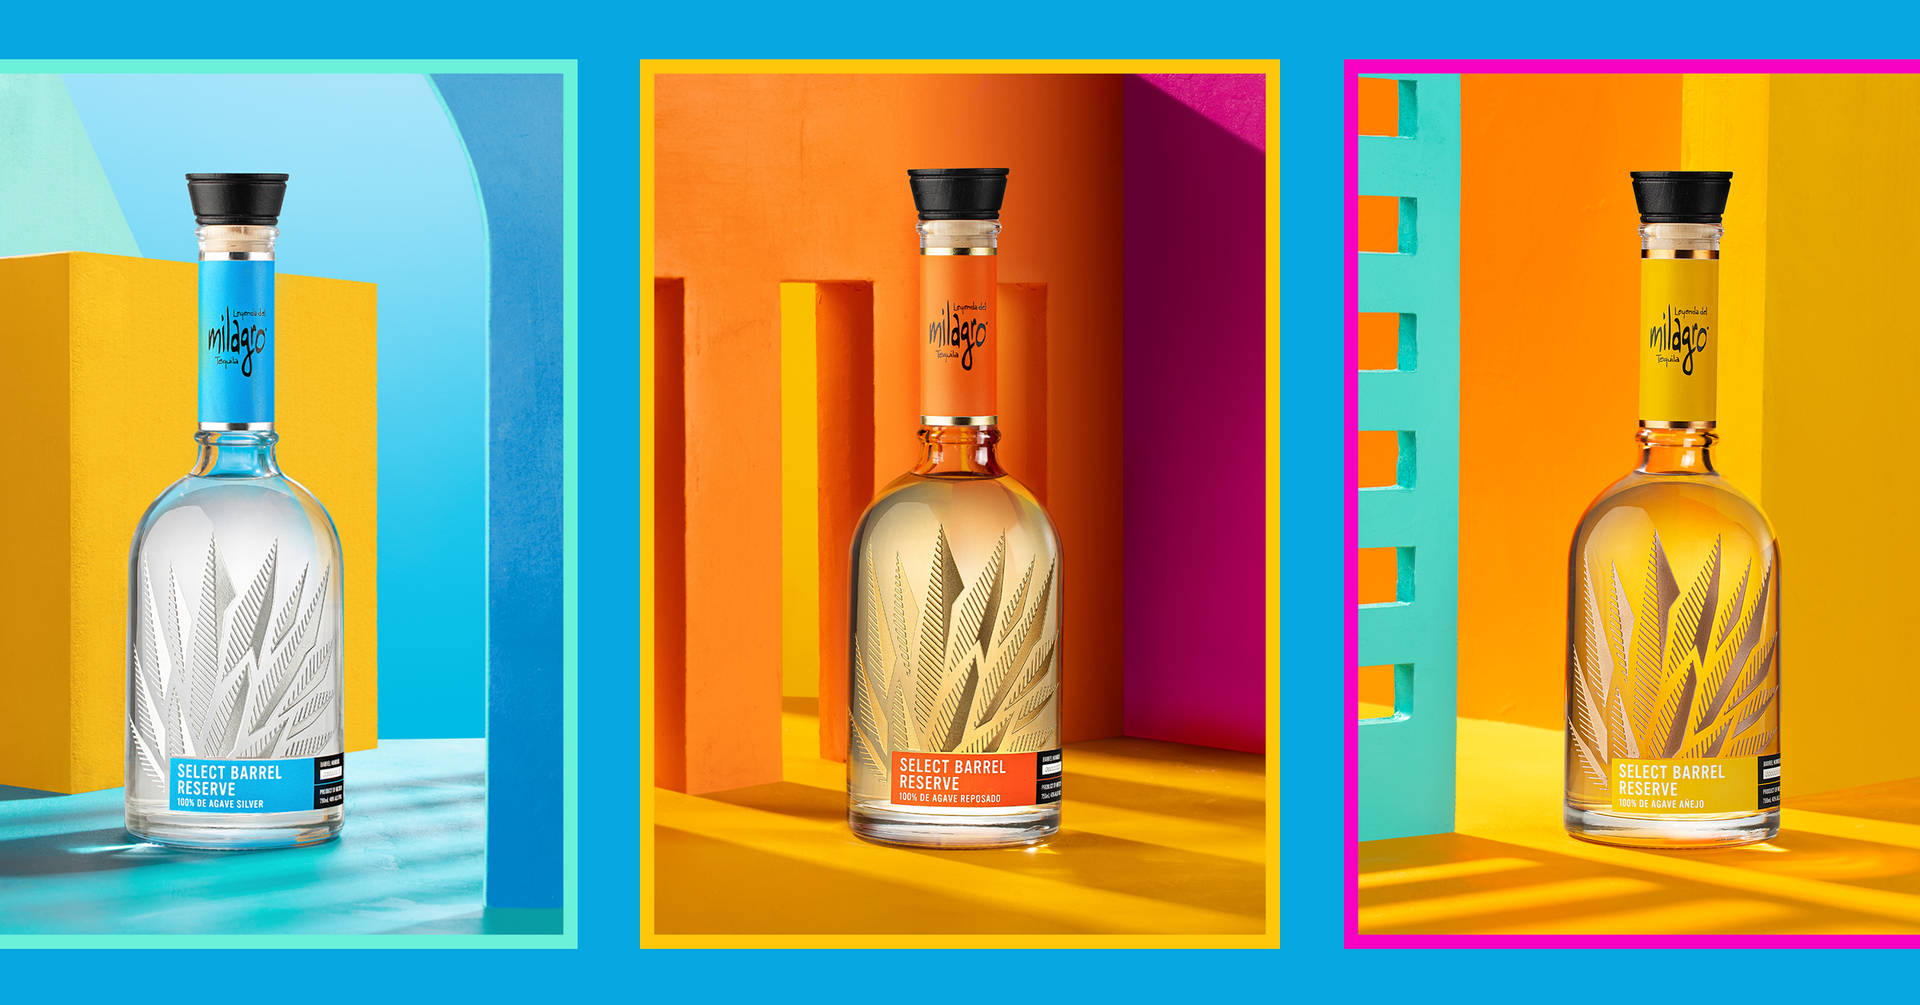 Milagro Brand Select Tequilas kombinerer gamle magi med moderne, stilfulde innovationer. Wallpaper